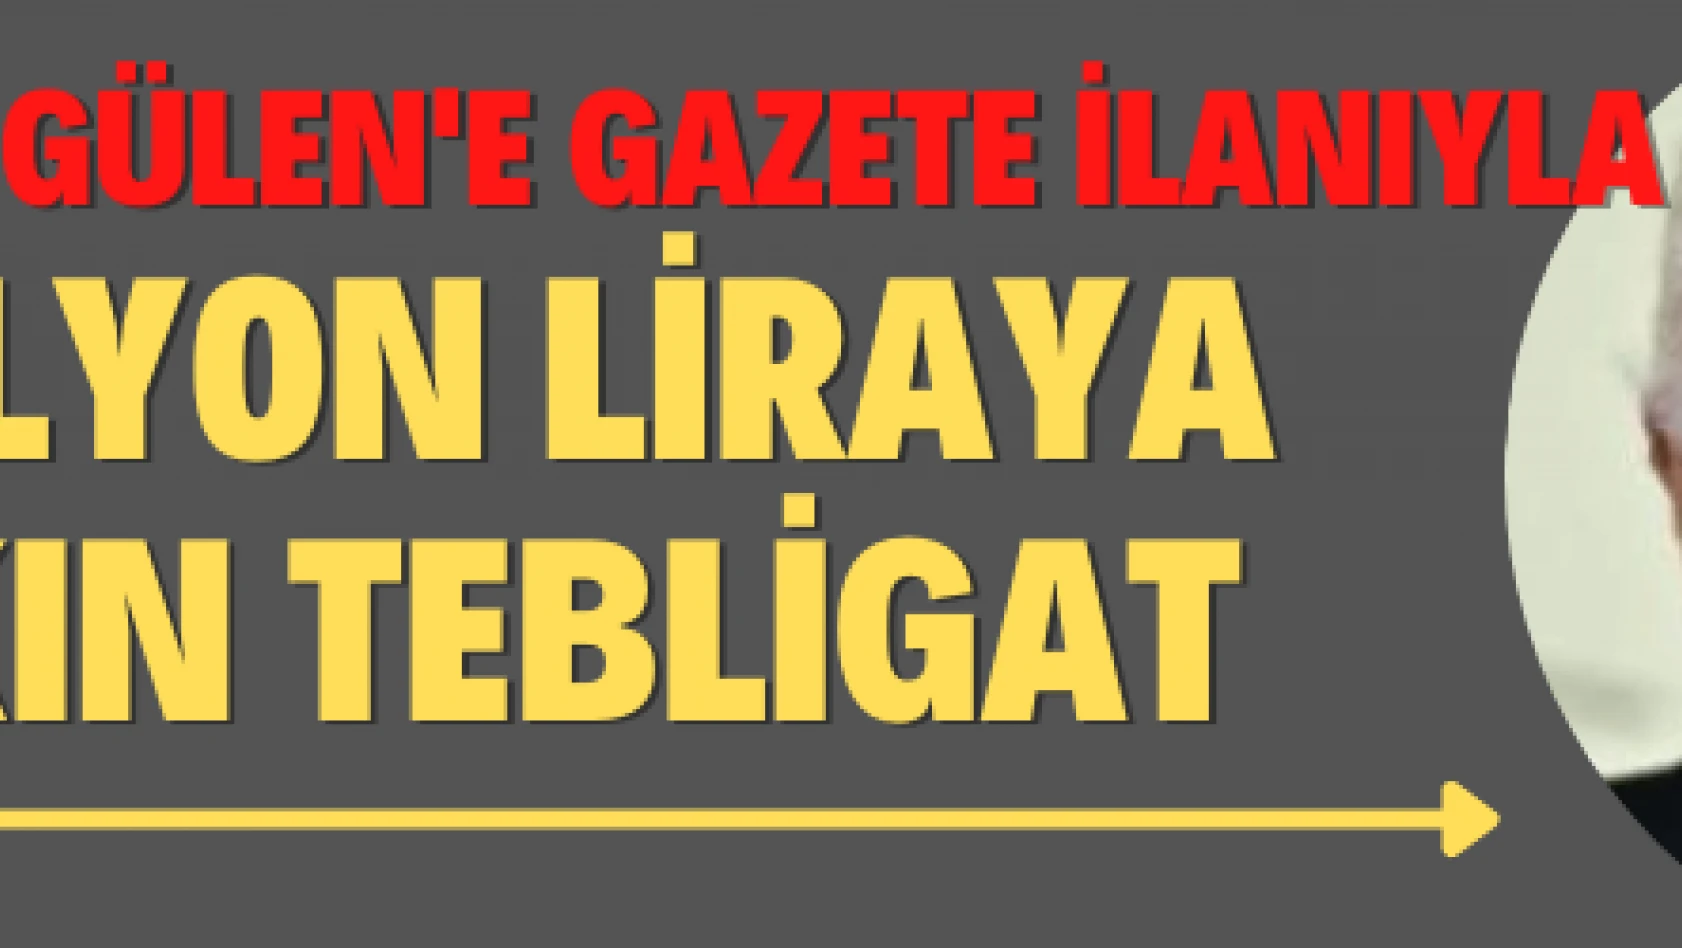 FETÖ elebaşı Gülen'e gazete ilanıyla 6 milyon liraya yakın tebligat